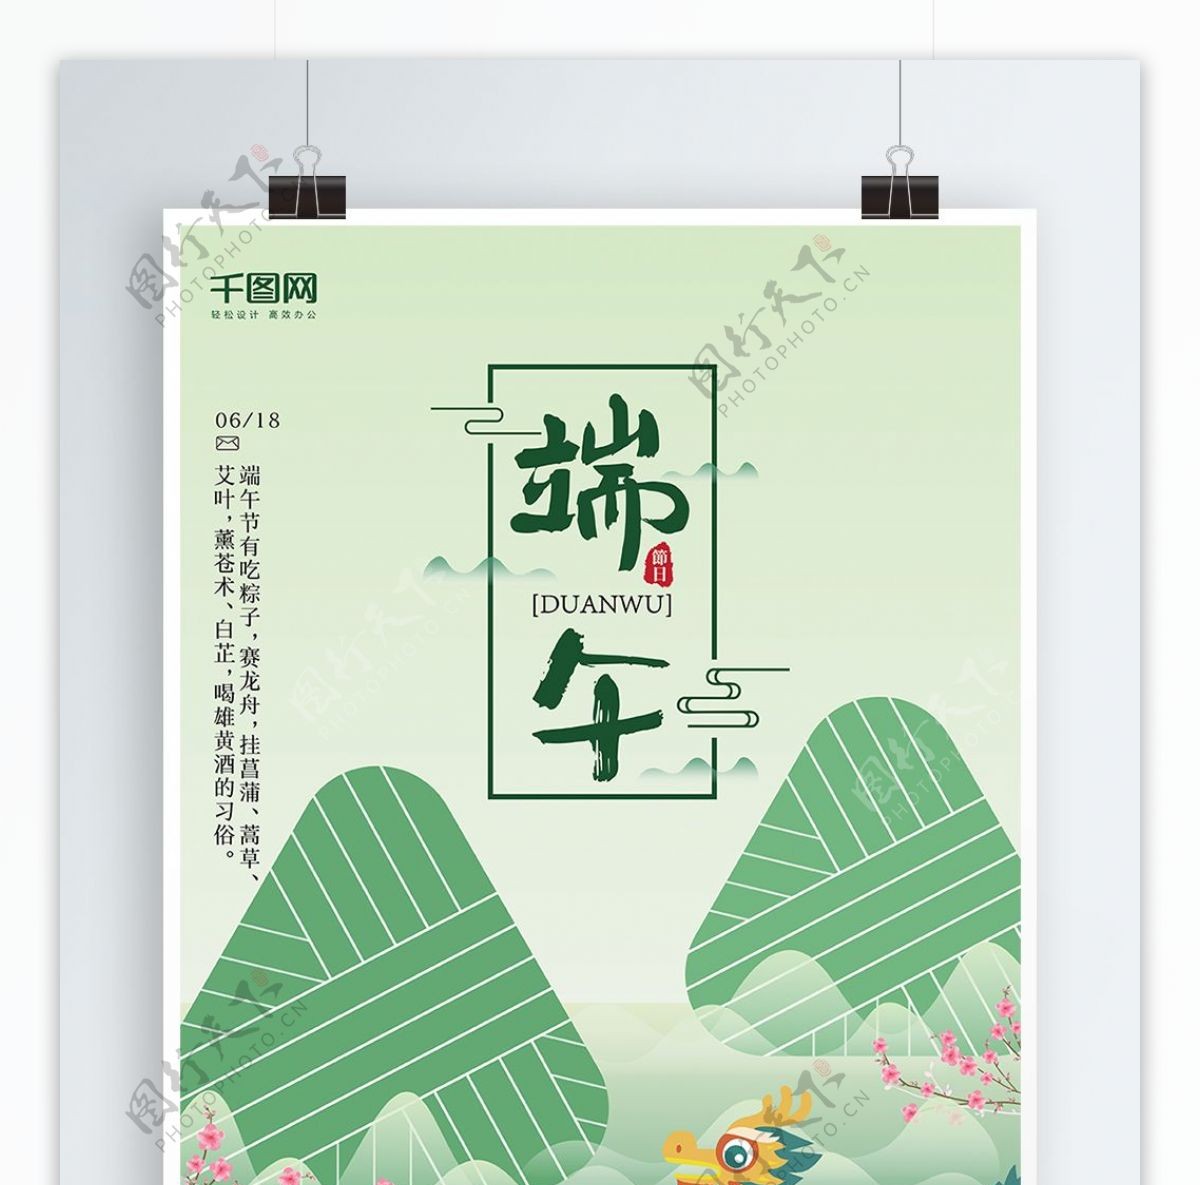 中国传统节日端午节卡通扁平清新端午节海报